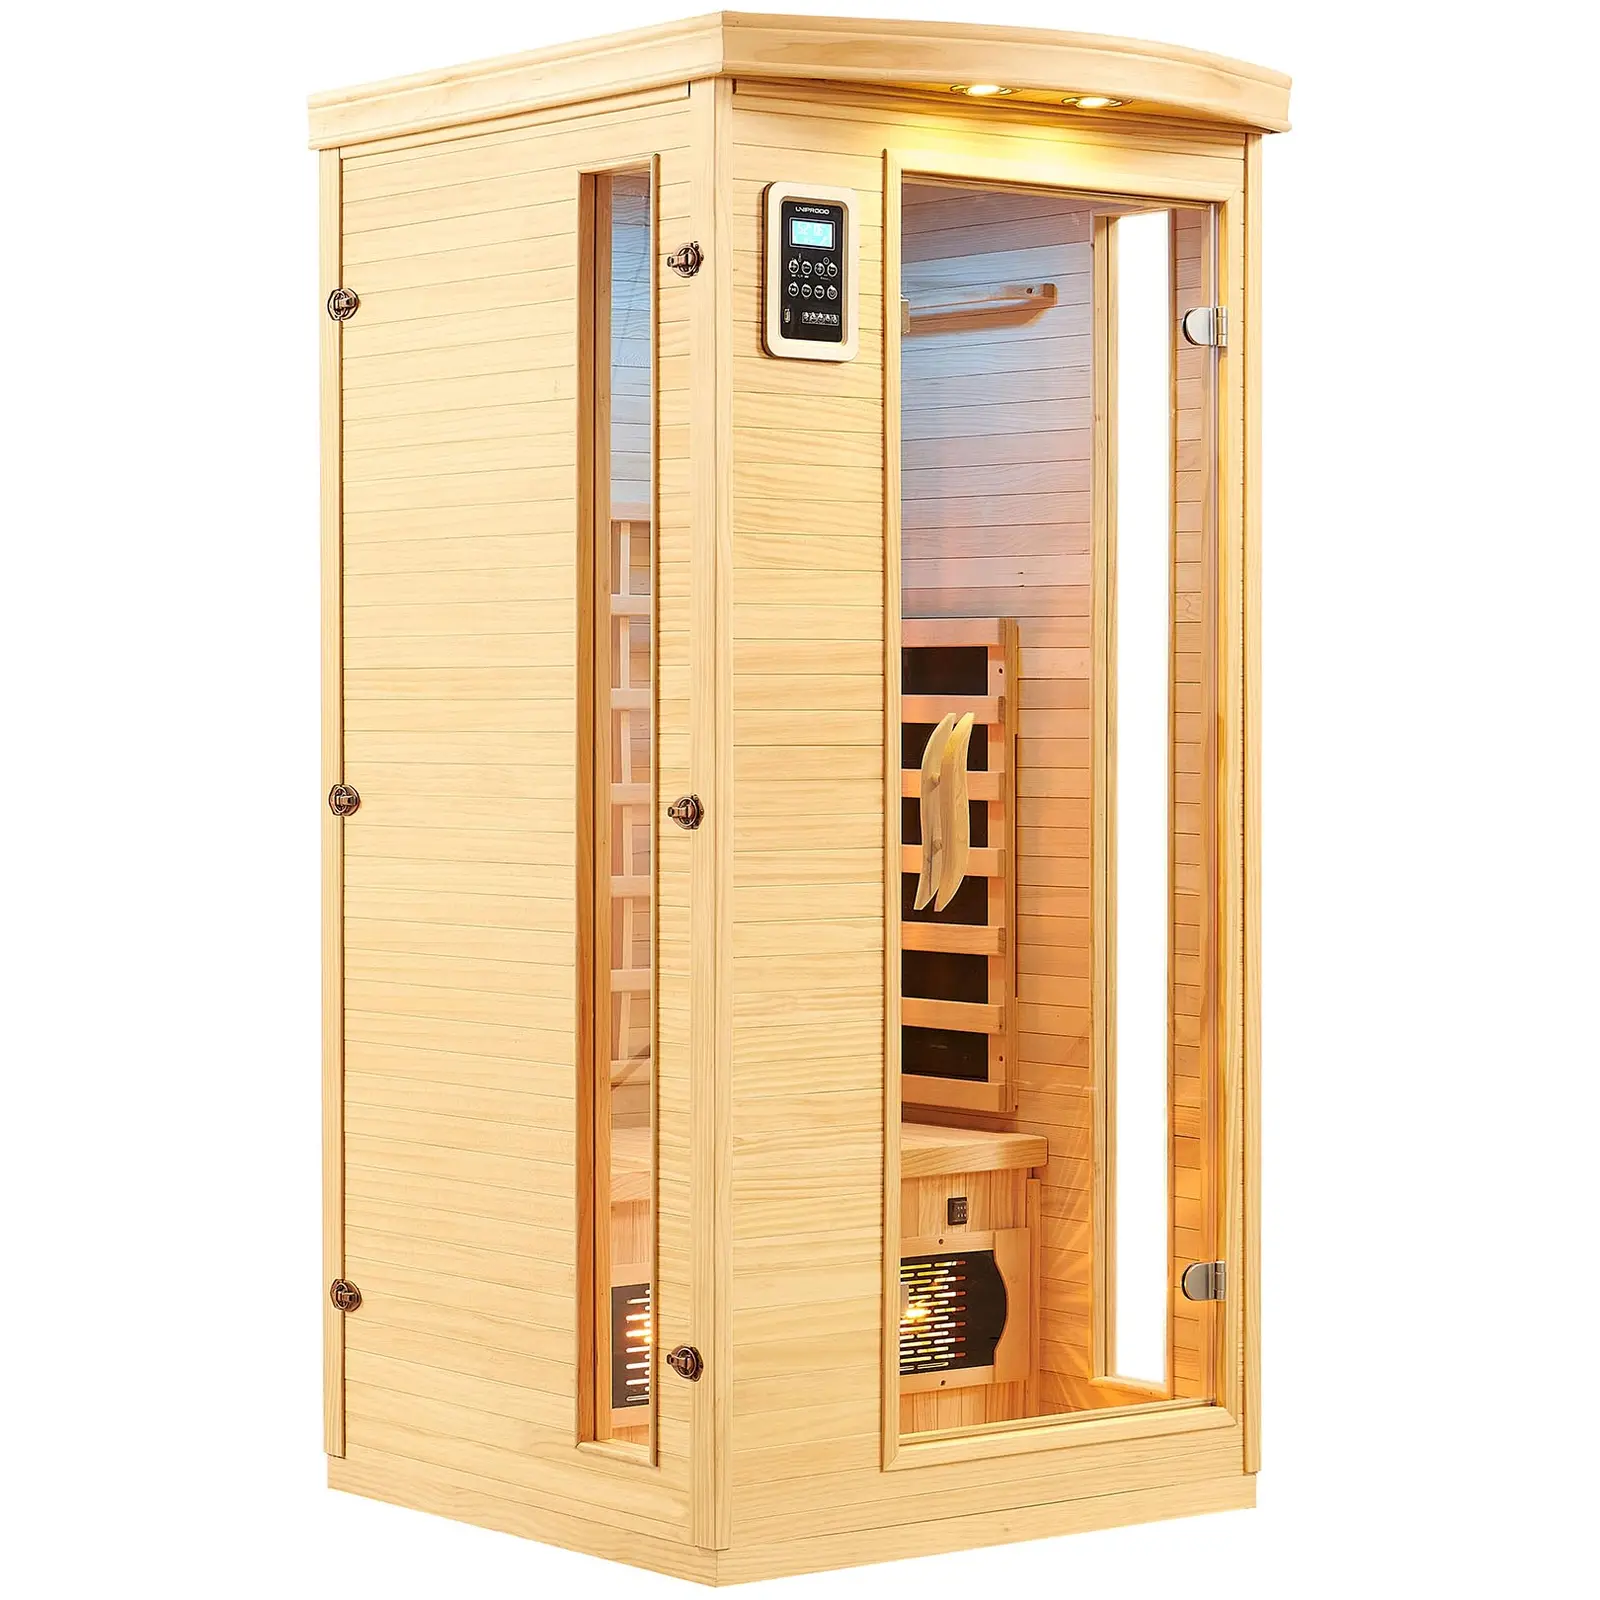 Infrarød sauna - 3 varmelamper i fuldt spektrum - 1 person - 1450 W - 18 til 60 °C